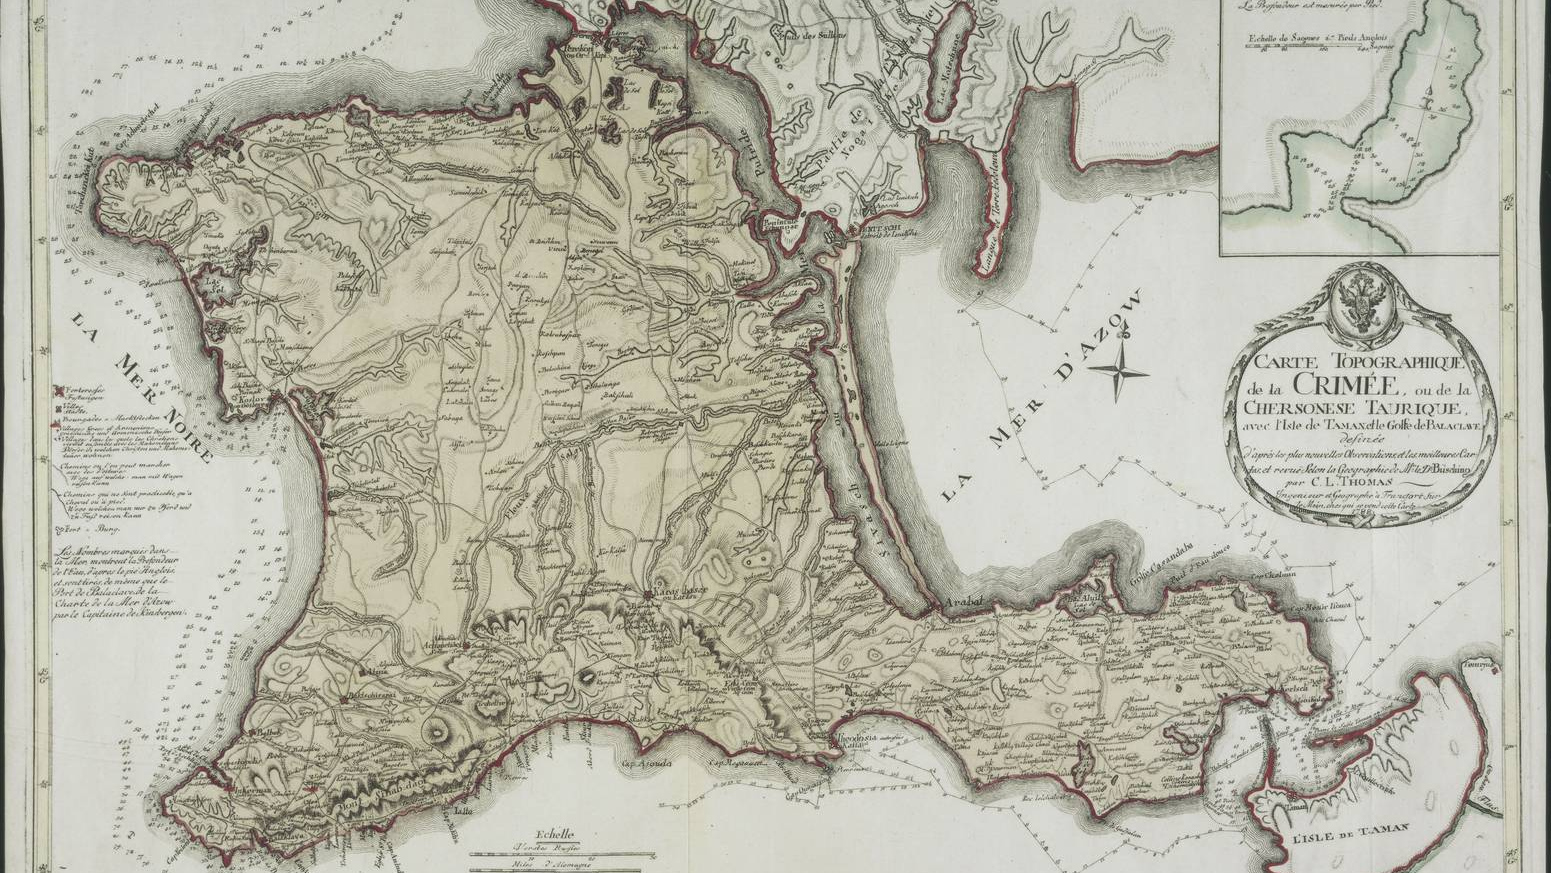 К. Л. Томас. Карта Крыма. 1788 год